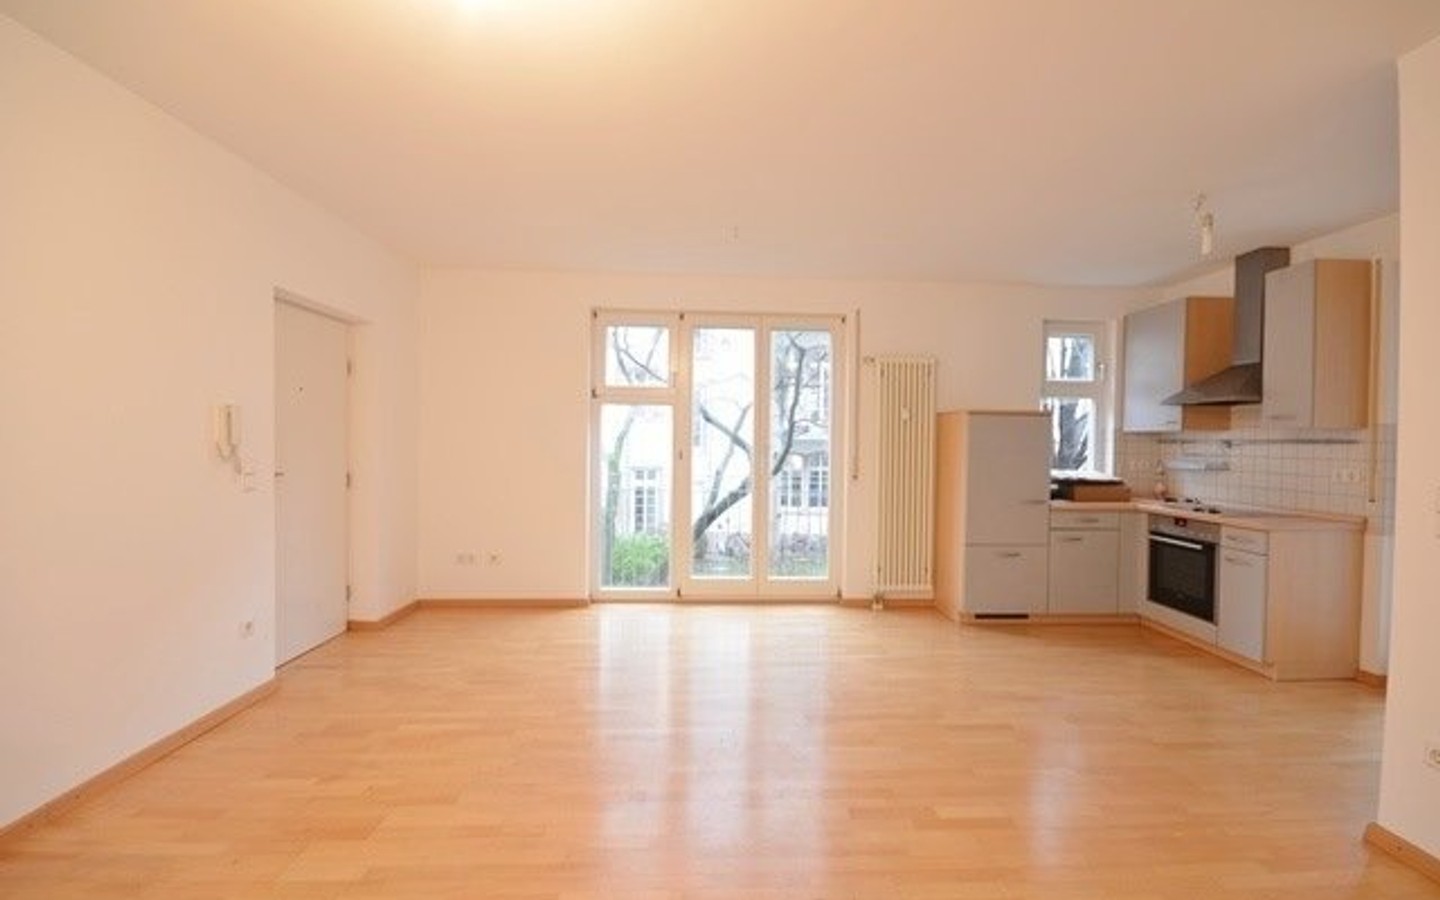 Wohnbereich mit Küche - Heidelberg-Altstadt: Modernes, helles 2 Zimmerappartement in ruhiger und zentraler Lage